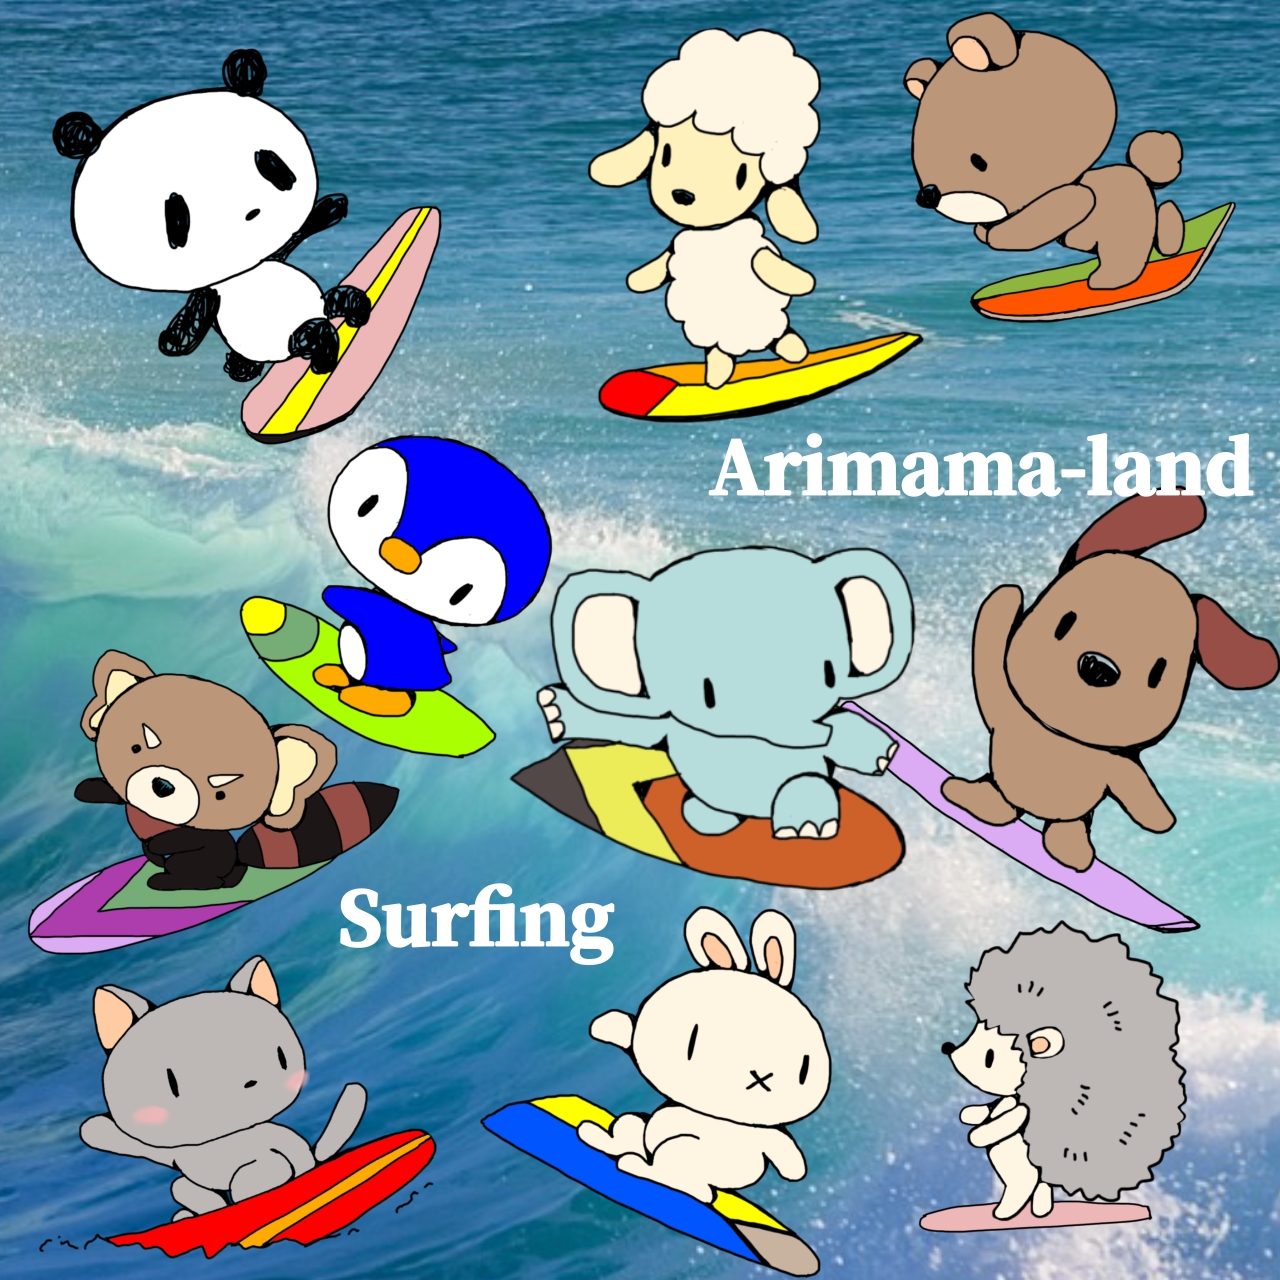 ありママランドの仲間たちのサーフィン